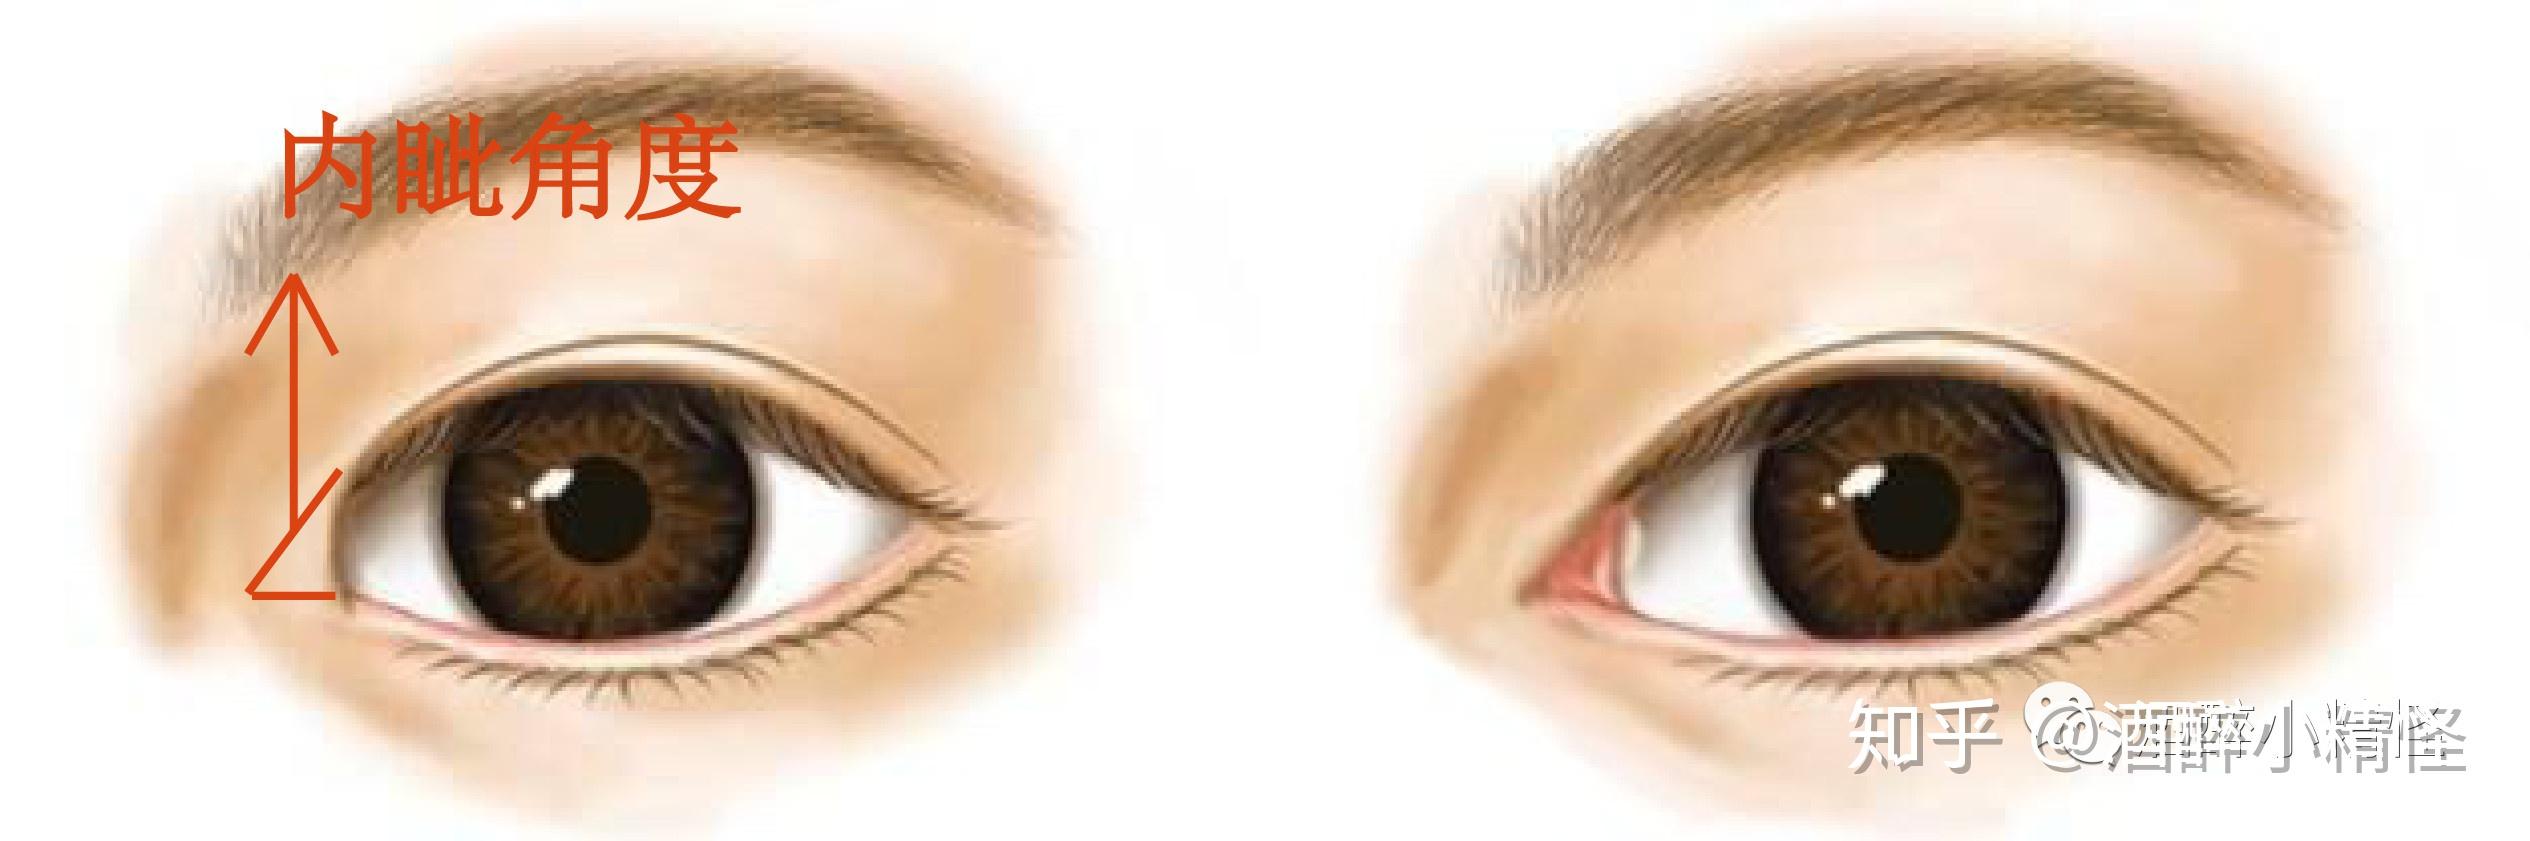 记录全切双眼皮+开内眼角恢复过程 - 知乎